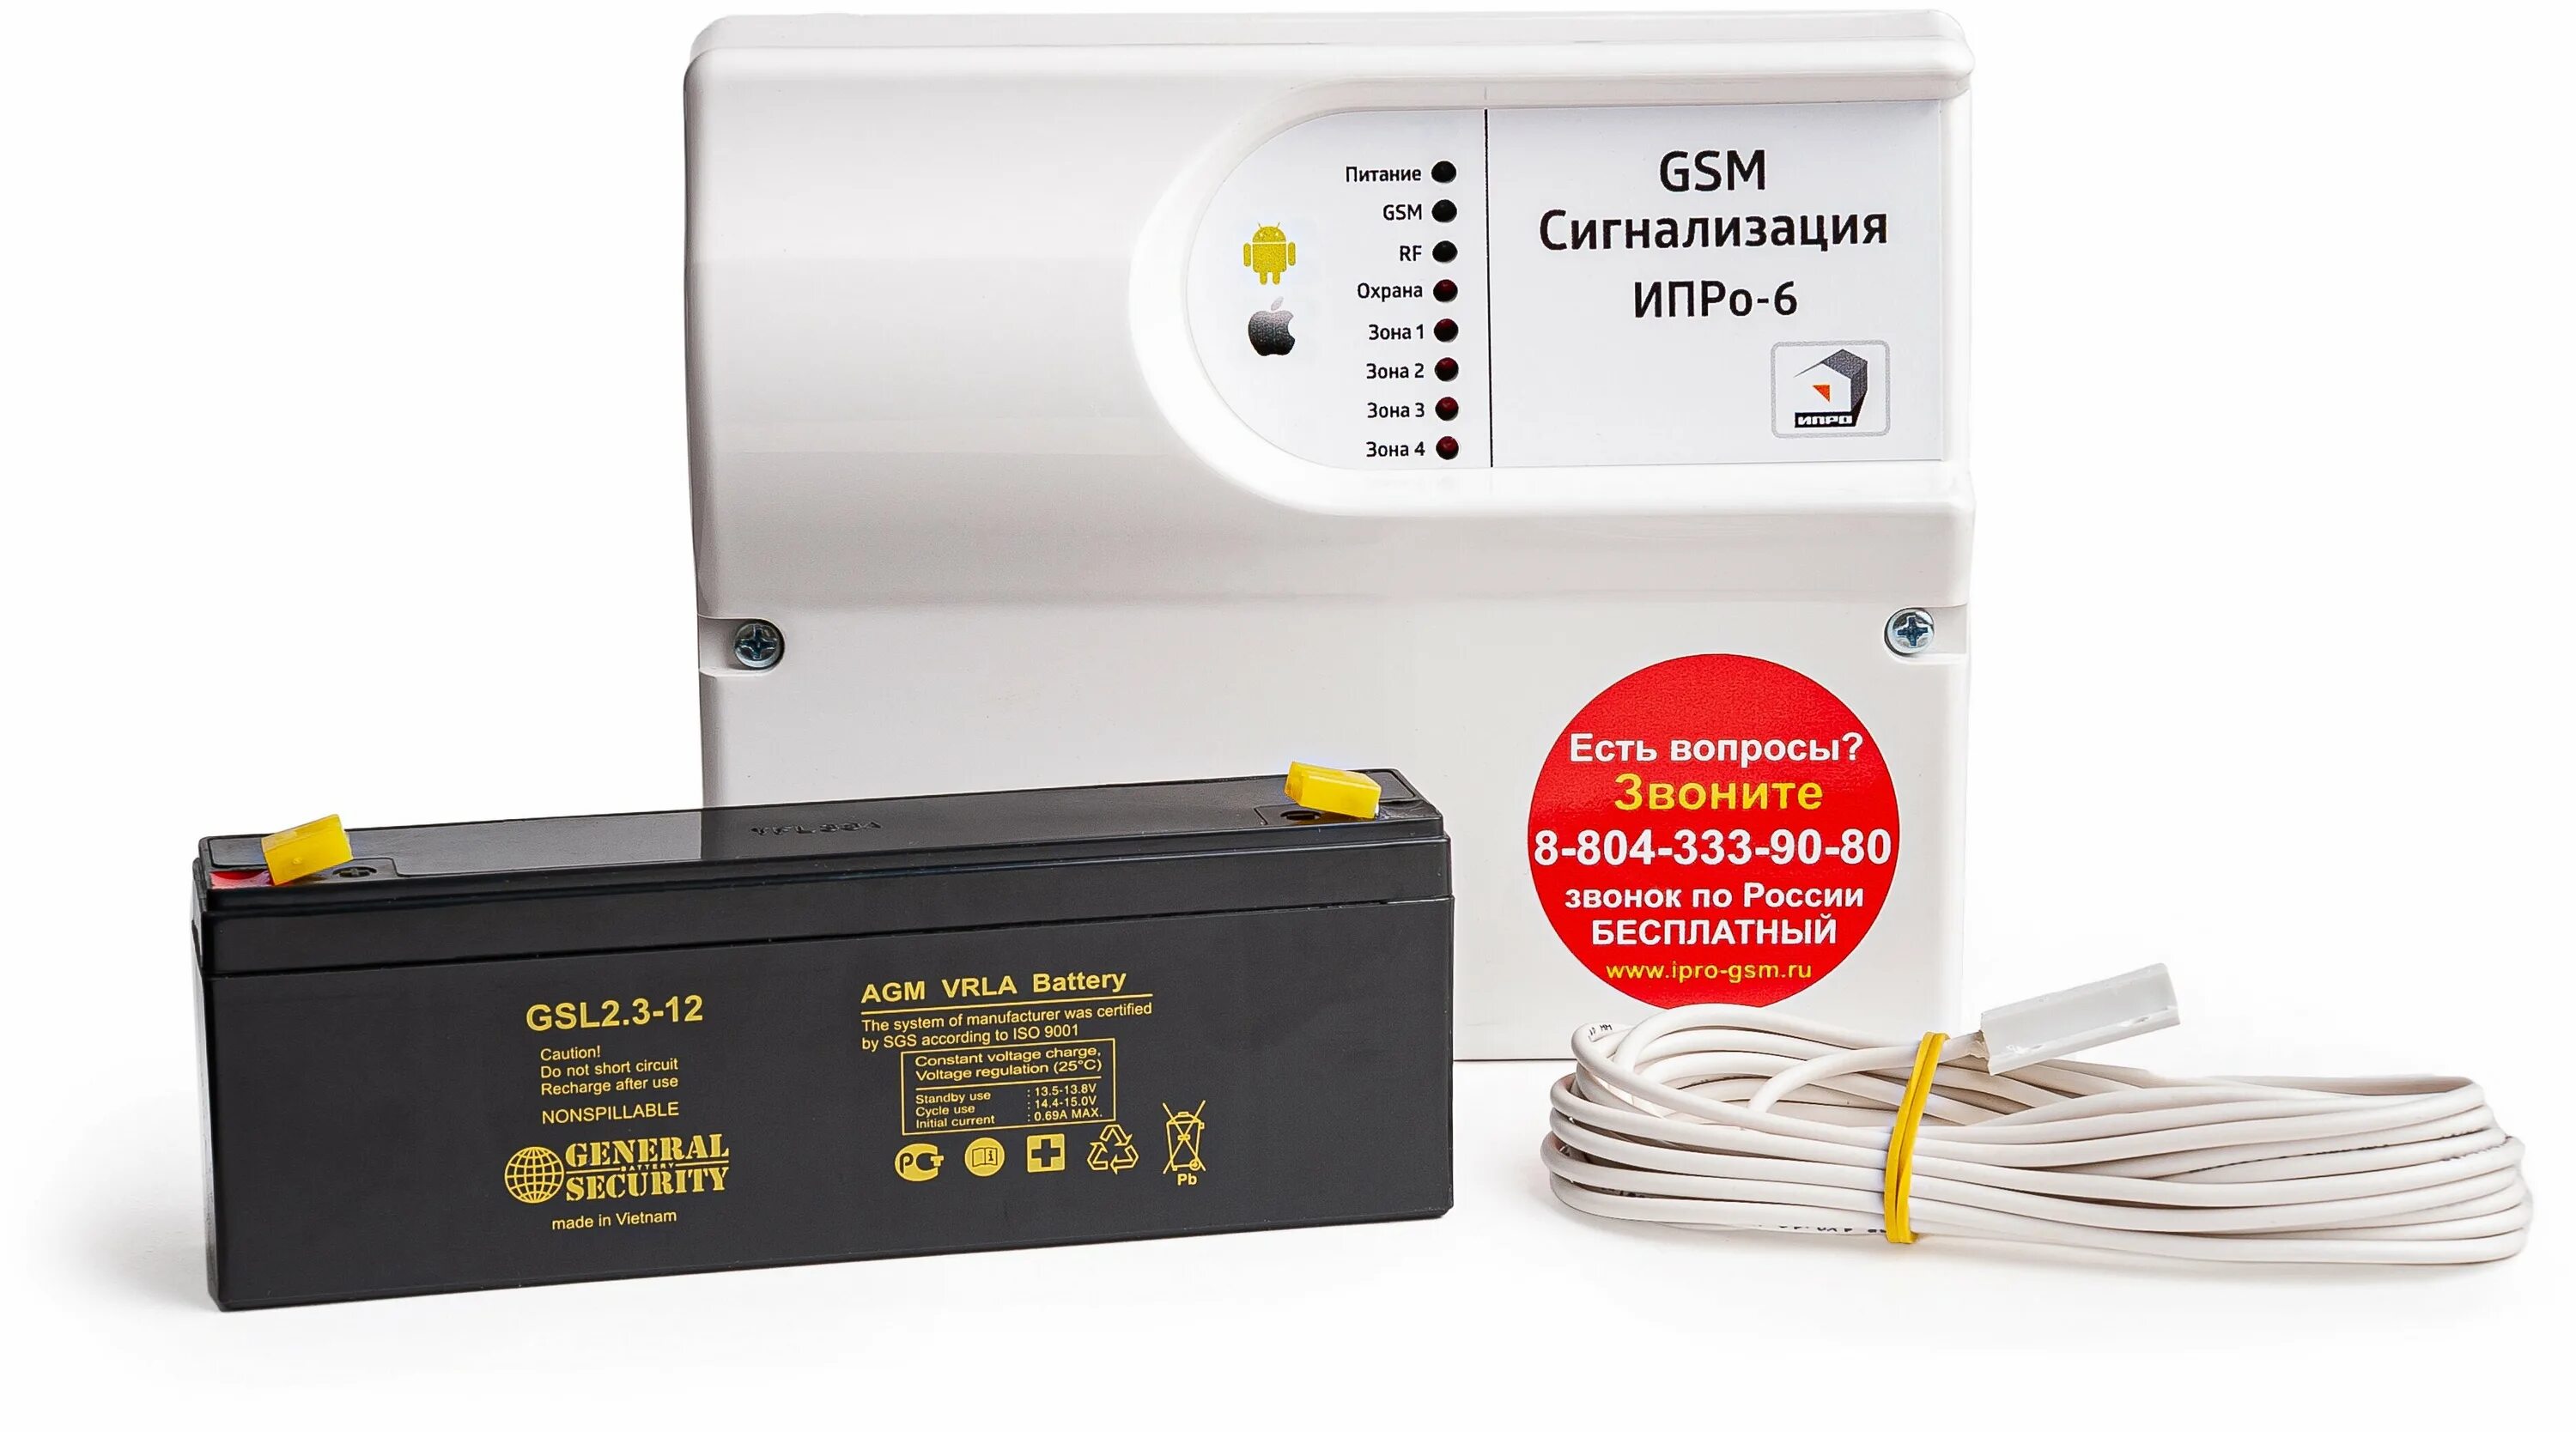 Gsm товары. GSM сигнализация ИПРО-6. GSM сигнализация "ИПРО-6" набор отопление. ИПРО часовой-8х8-RF-Box, GSM. Датчик температуры для GSM ИПРО-6.